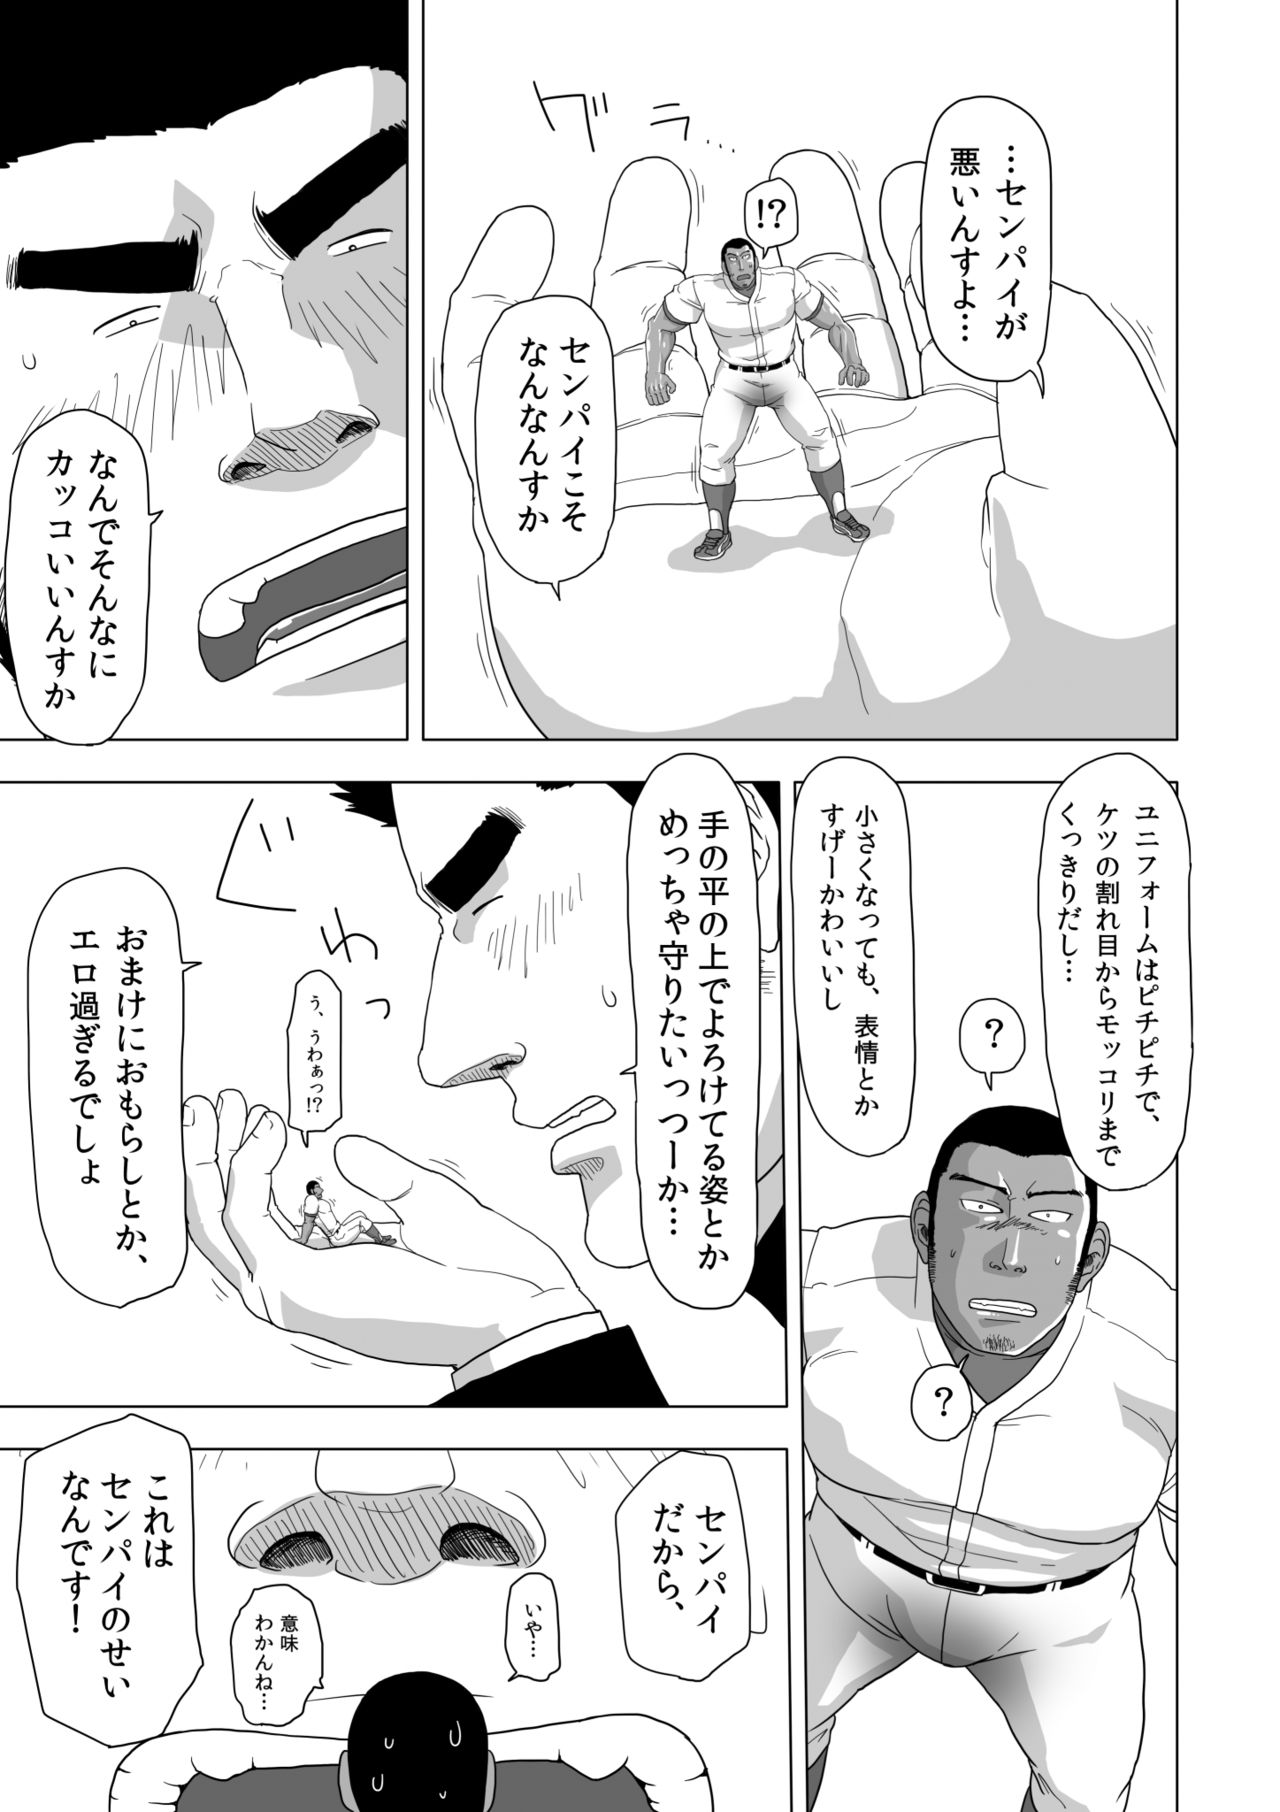 [Gakuranman] Too Cute and Tiny, my Nomura 学ラン  野球部のセンパイが好きすぎて